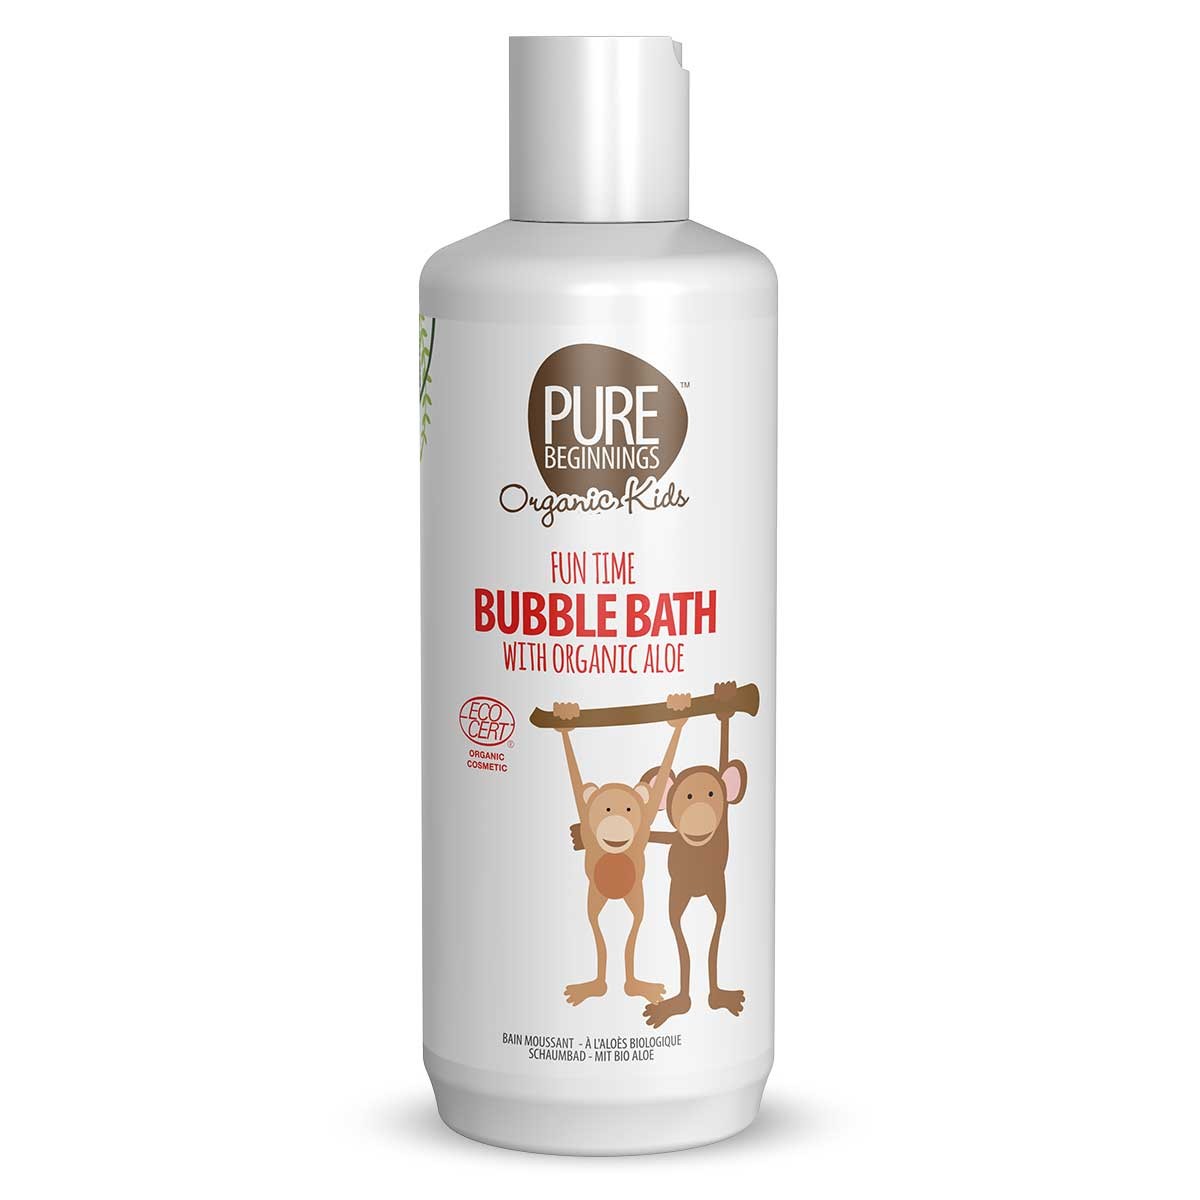 Pure Beginnings Fun Time Bubble Bath 375ml with Organic Aloe